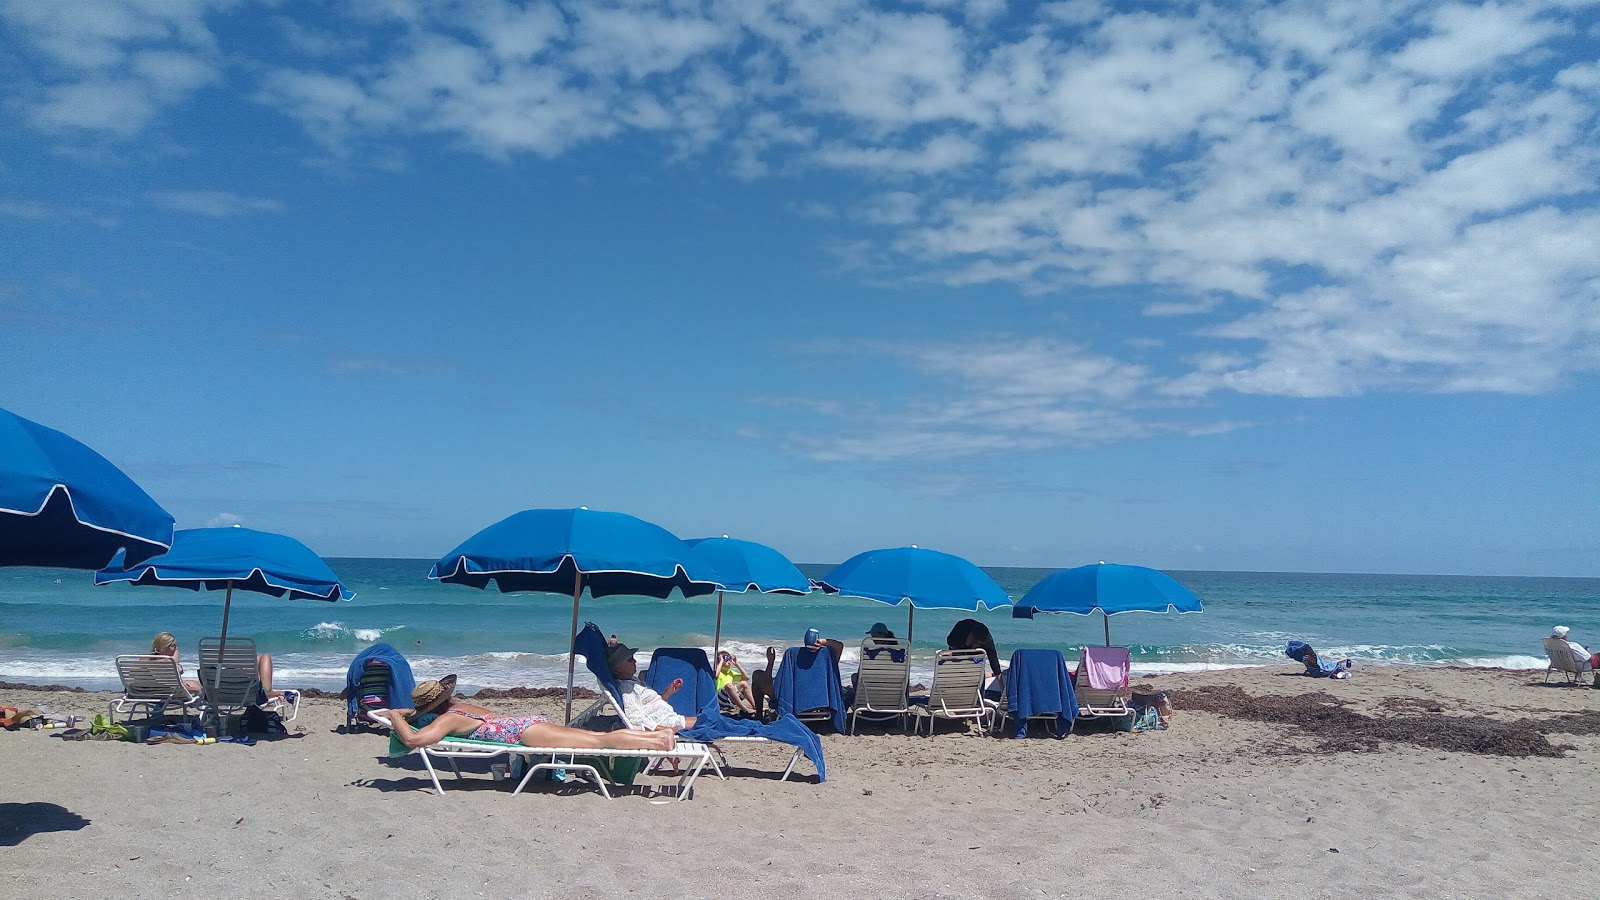 Bob Graham beach'in fotoğrafı - rahatlamayı sevenler arasında popüler bir yer